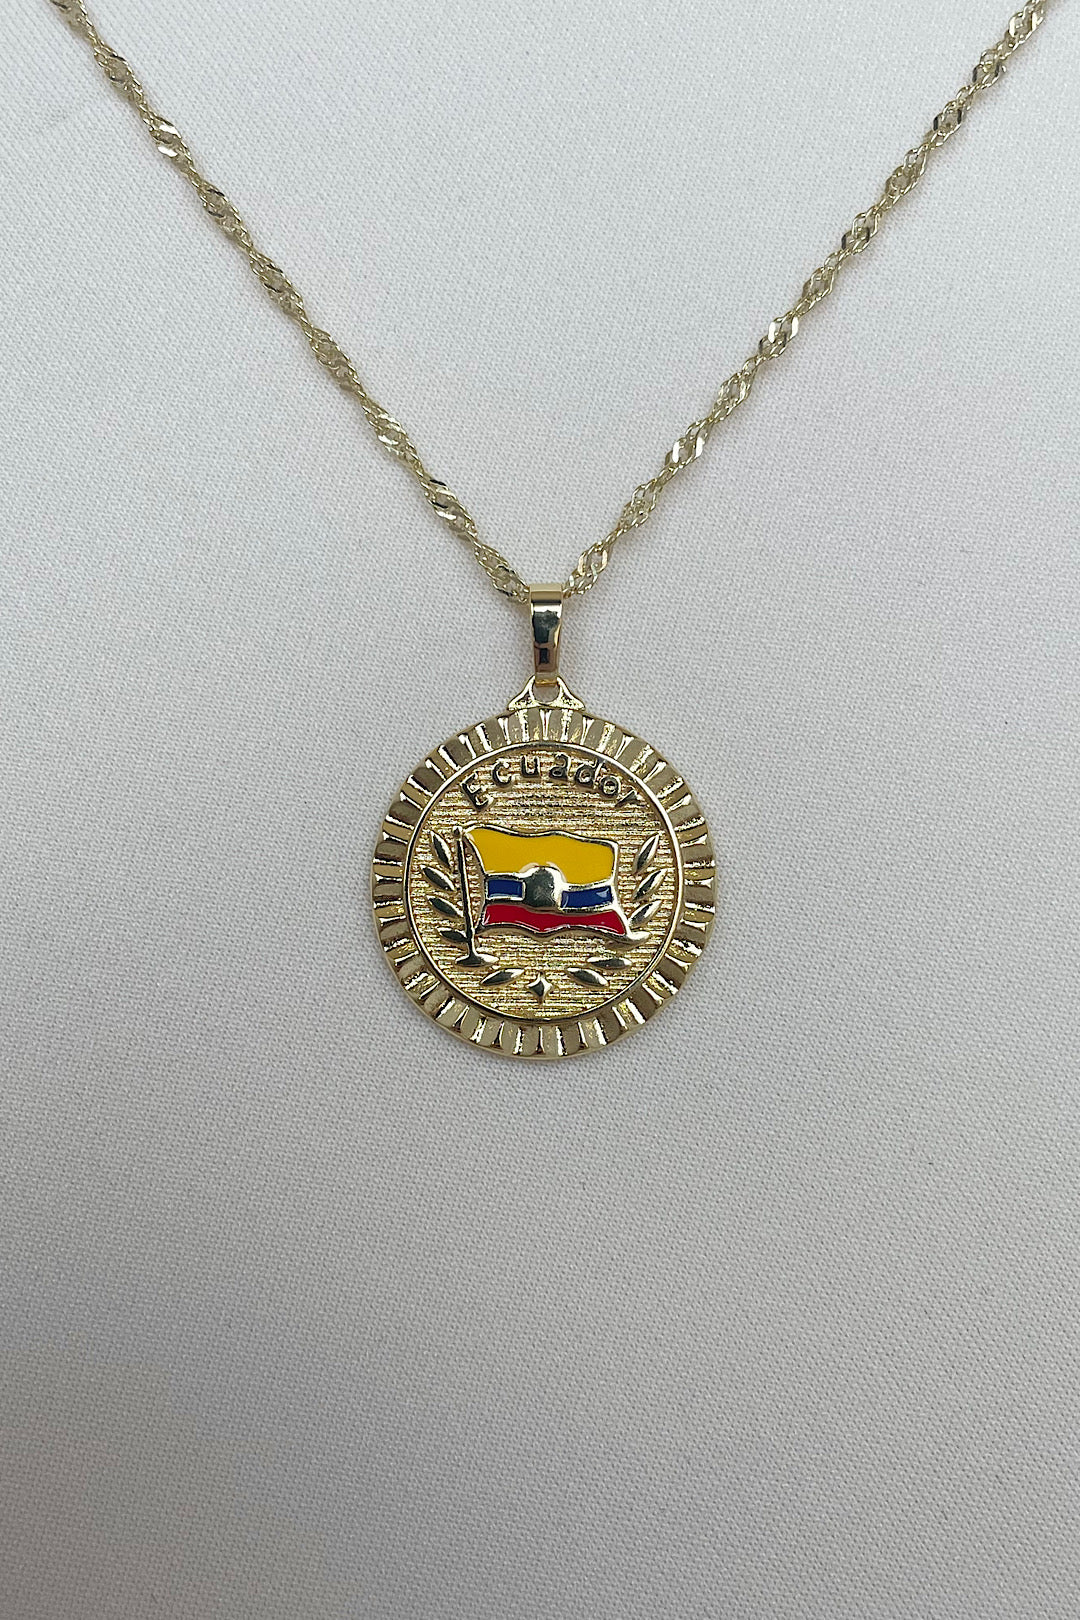 Ecuador flag Necklace